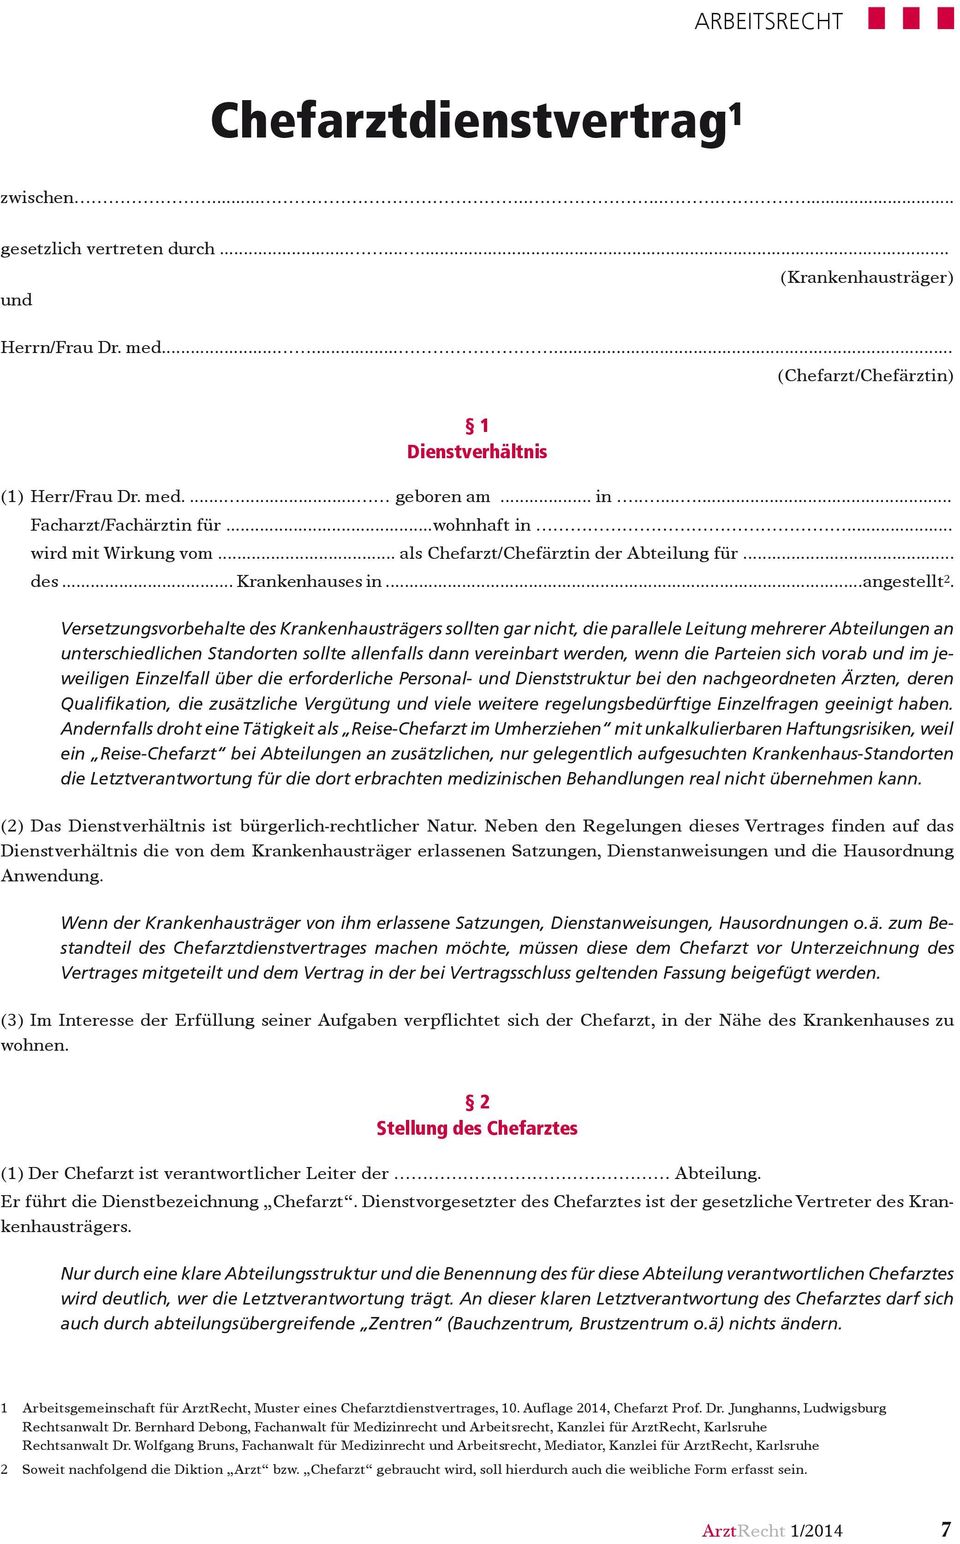 Arztrecht Chefarztdienstvertrag 10 Auflage 2014 Januar Jahrgang